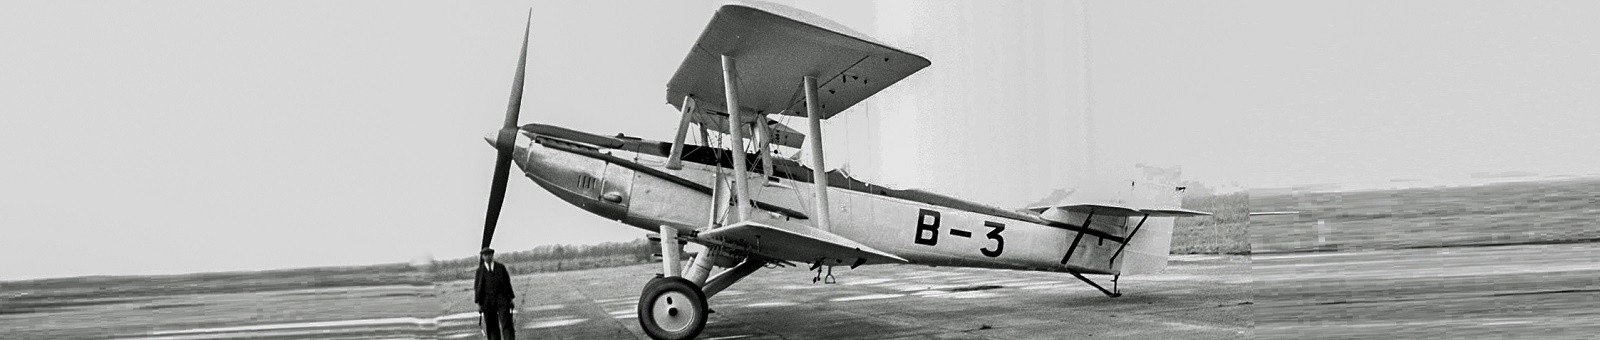 Blackburn B-3 M.1/30